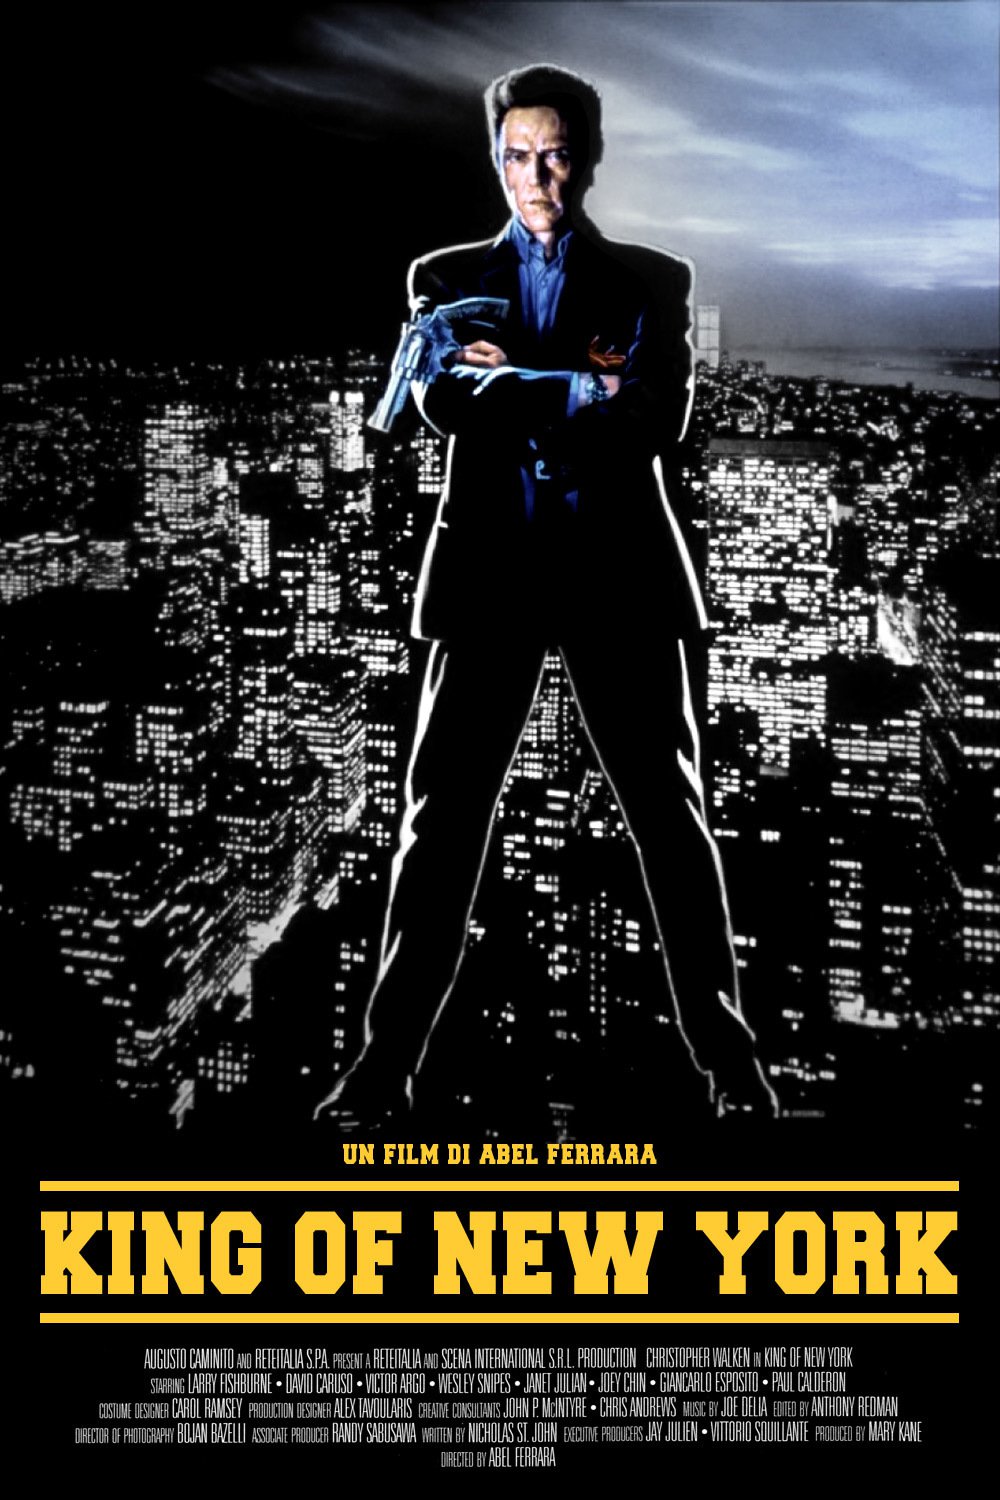 King of New York - LongTake - La passione per il cinema ha una nuova regia